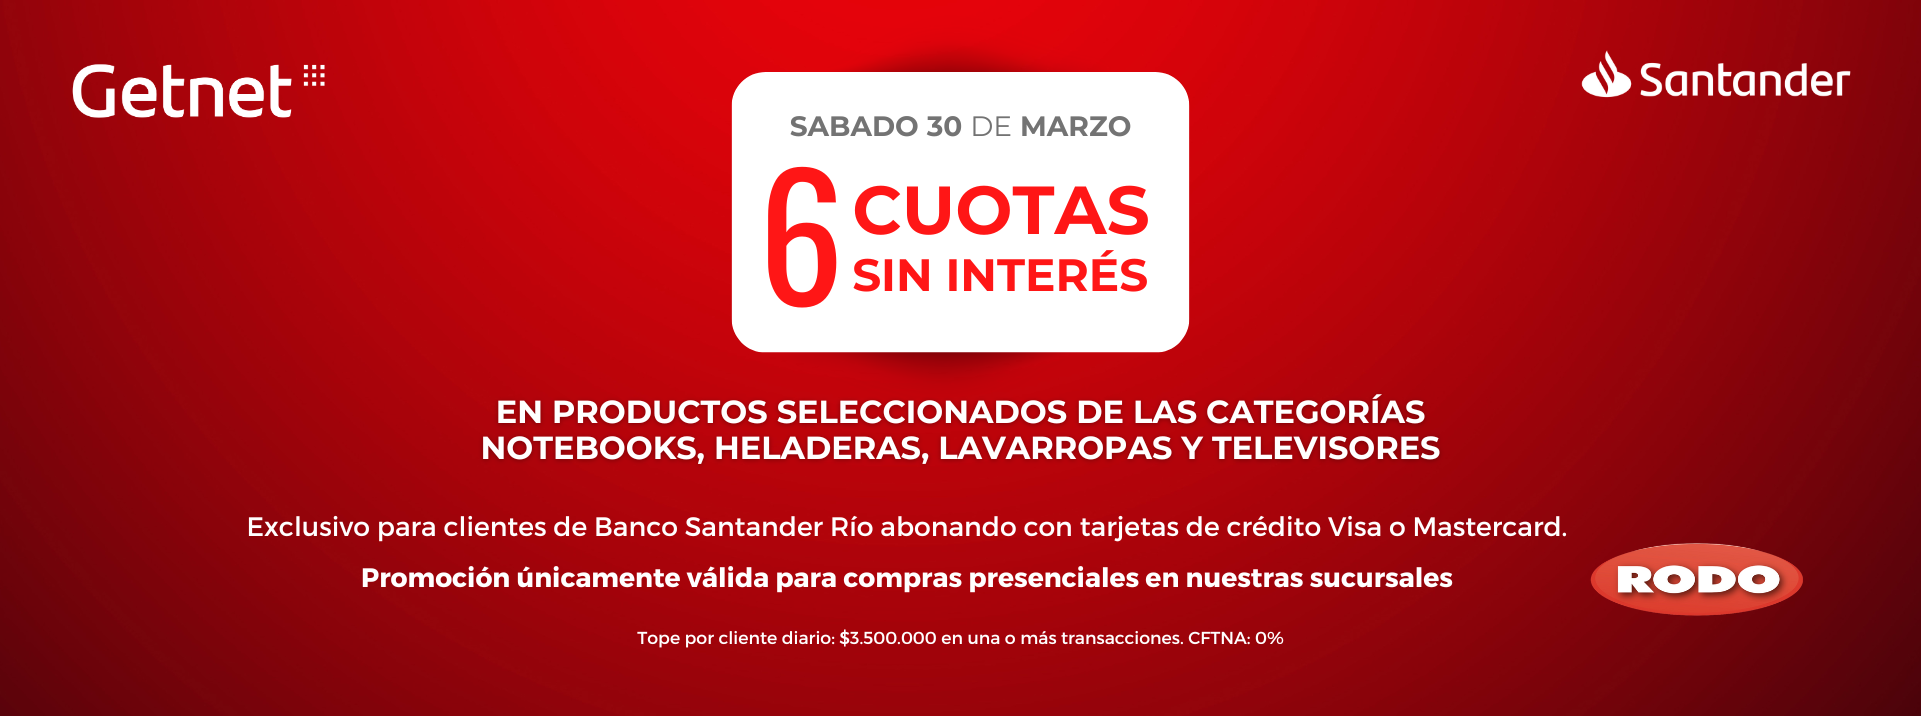 Promoción para clientes del Banco Santander Rio